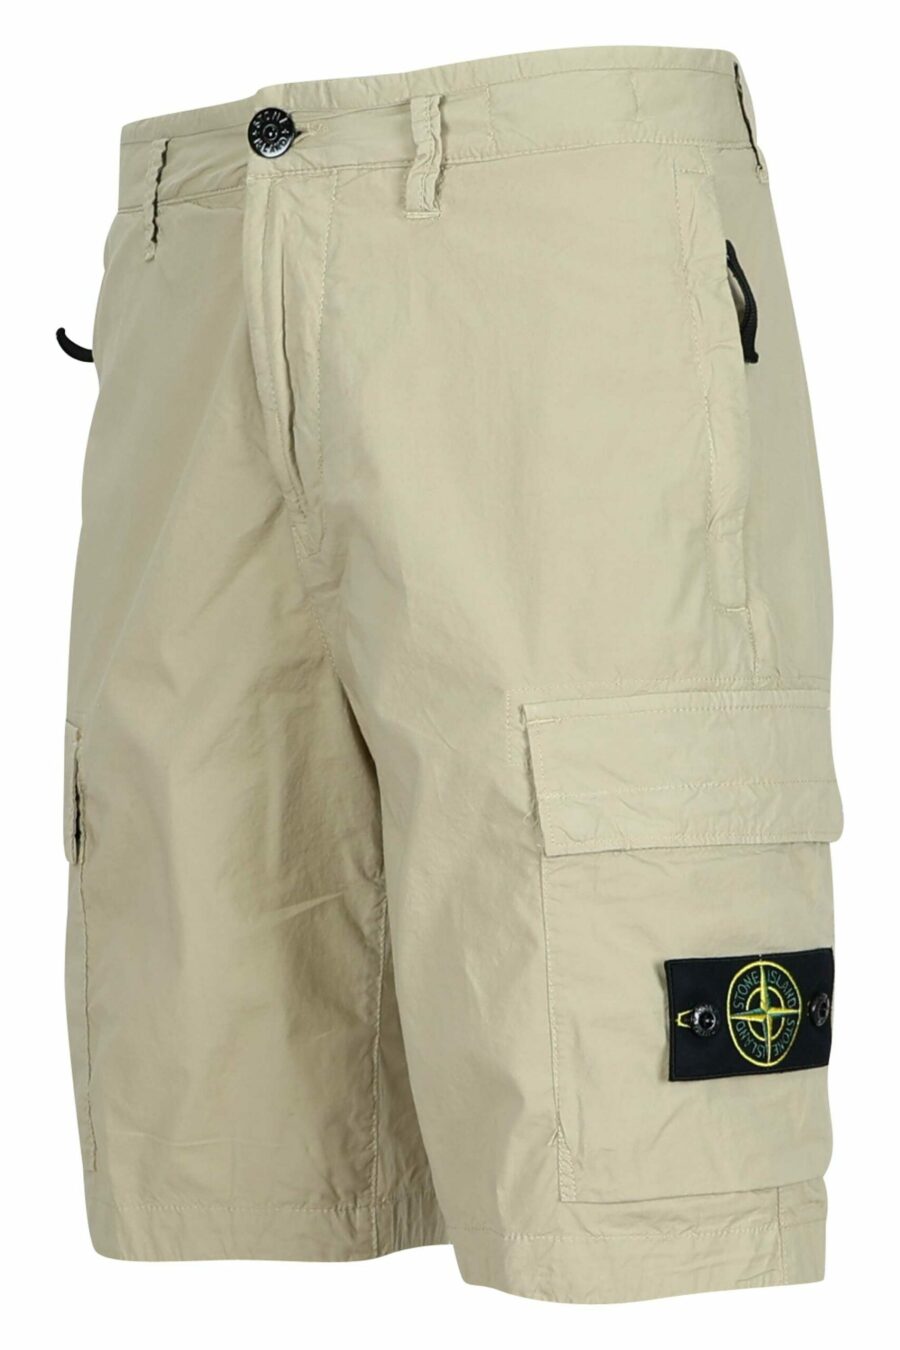 Sandfarbene Cargo-Shorts mit Logo-Kompass-Aufnäher - 8052572916298 1 skaliert